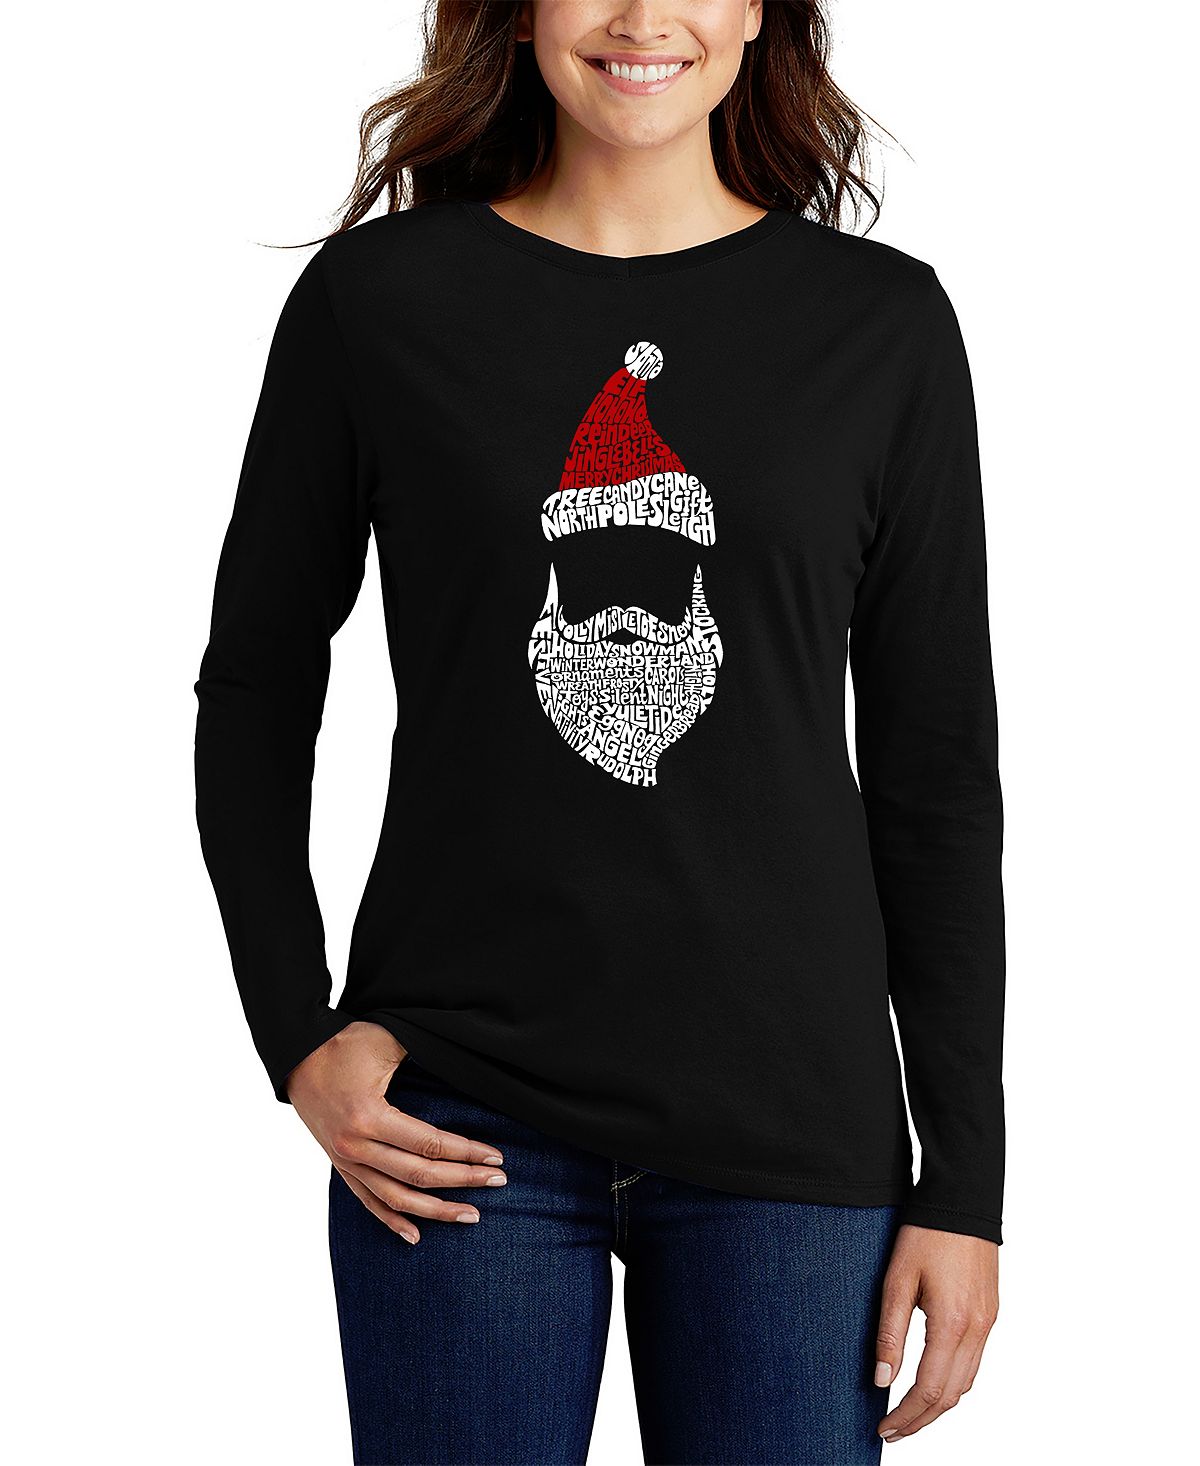 Женская футболка с длинным рукавом и надписью санта-клаус LA Pop Art, черный красный роскошный бархатный нарядный костюм санта клауса рождественский костюм для косплея рождественский карнавал фотосъемка